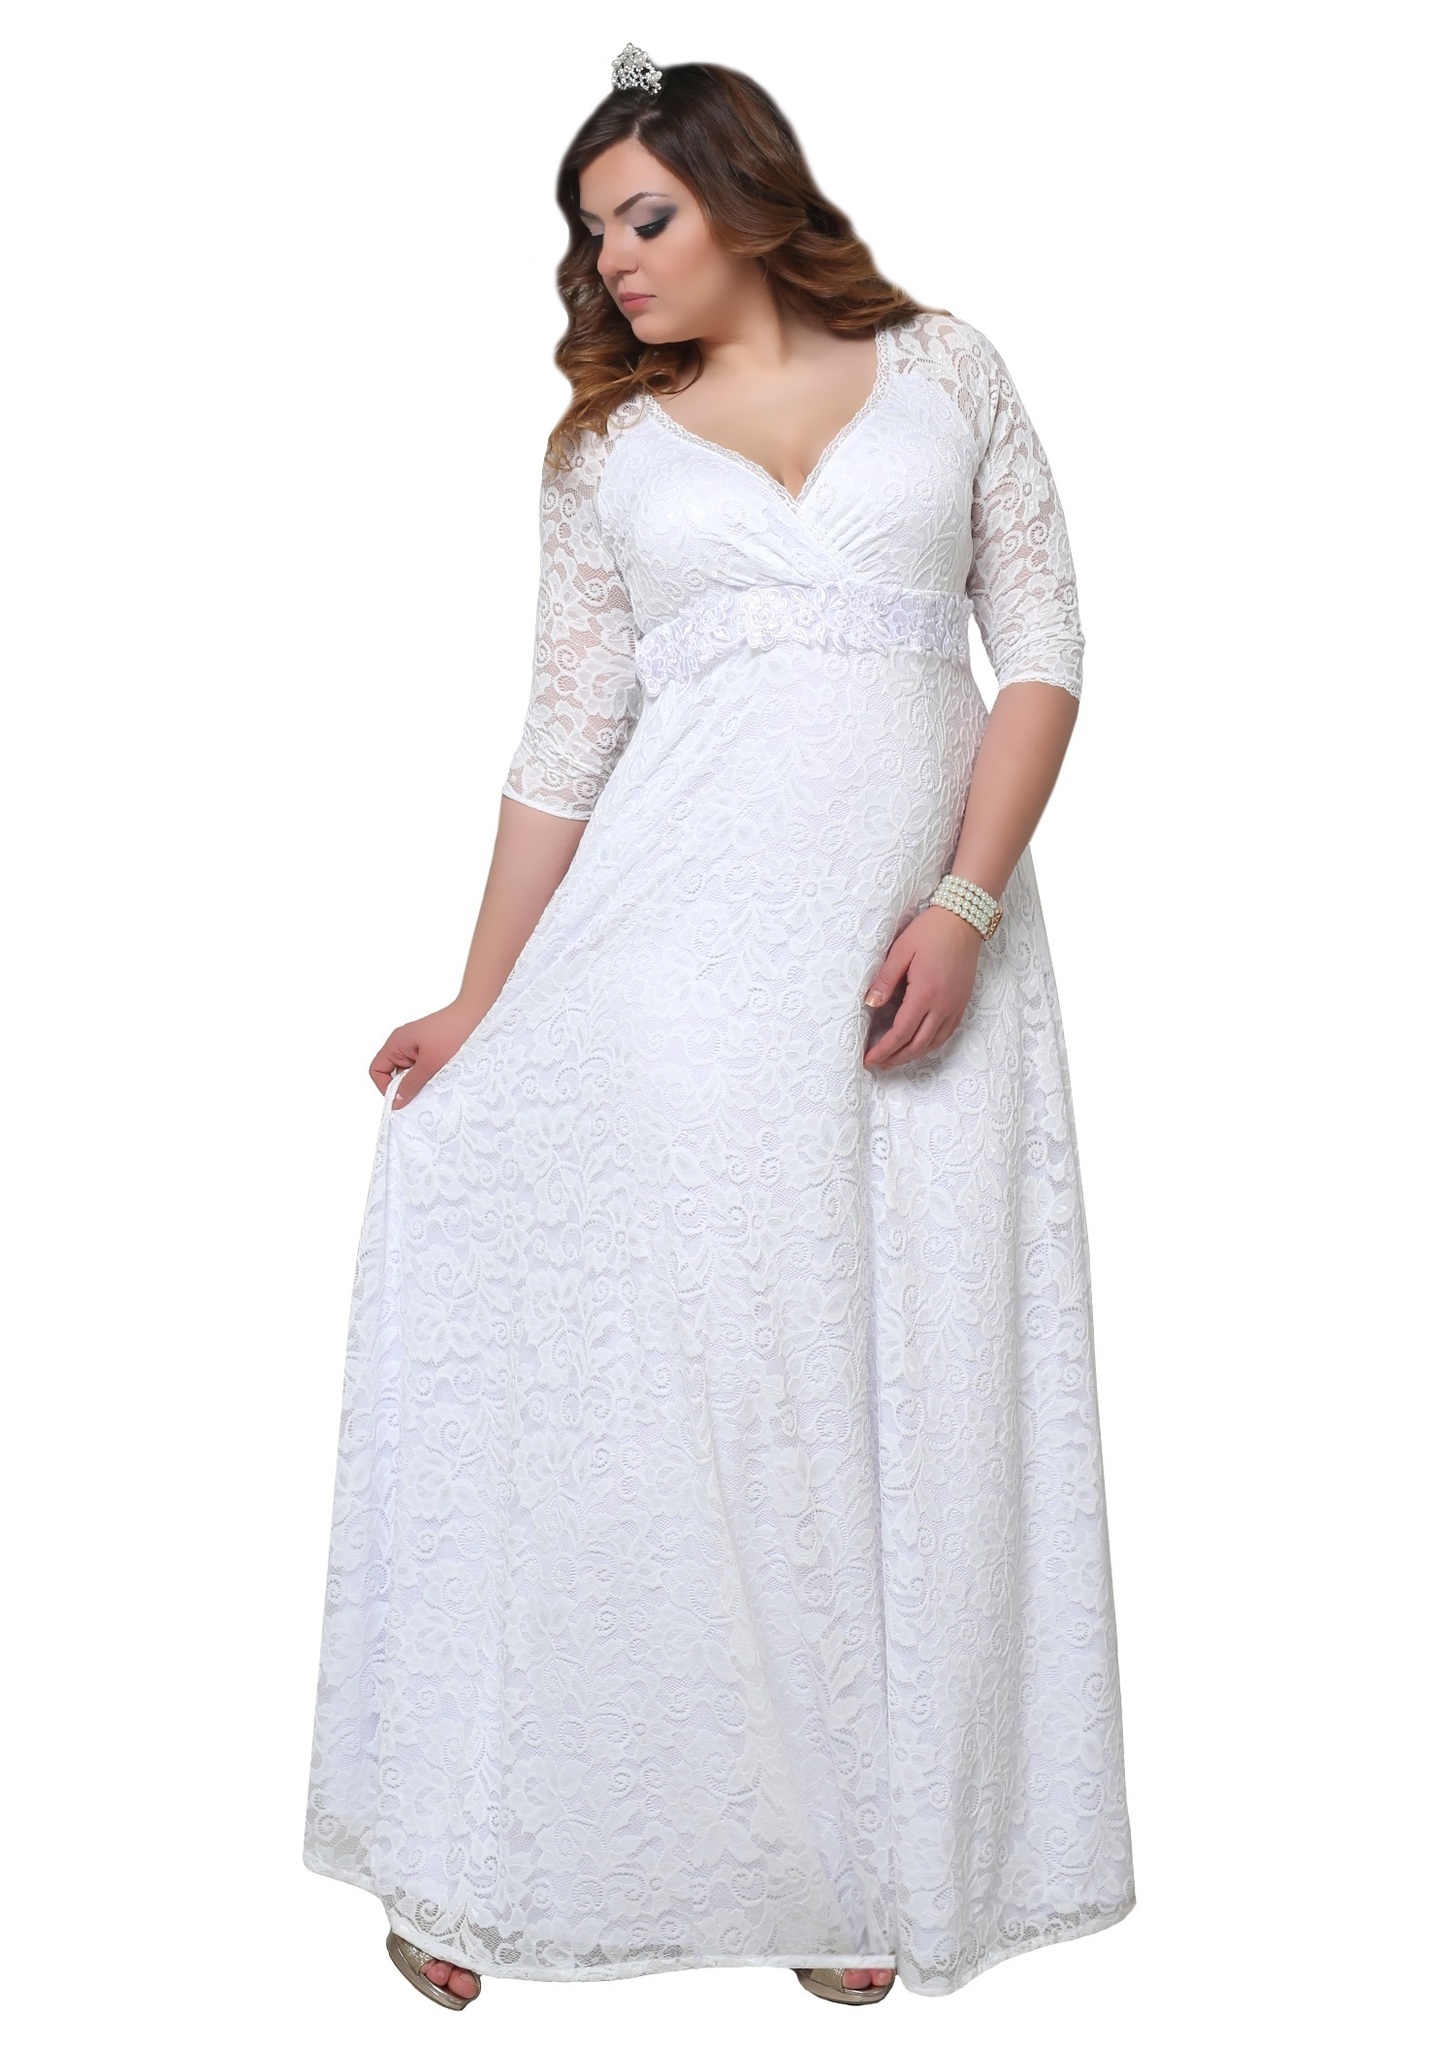 Платье напрокат большой размер. Свадебные платья для полных. Белое вечернее платье большого размера. Белые вечерние платья больших размеров. Венчальное платье больших размеров.